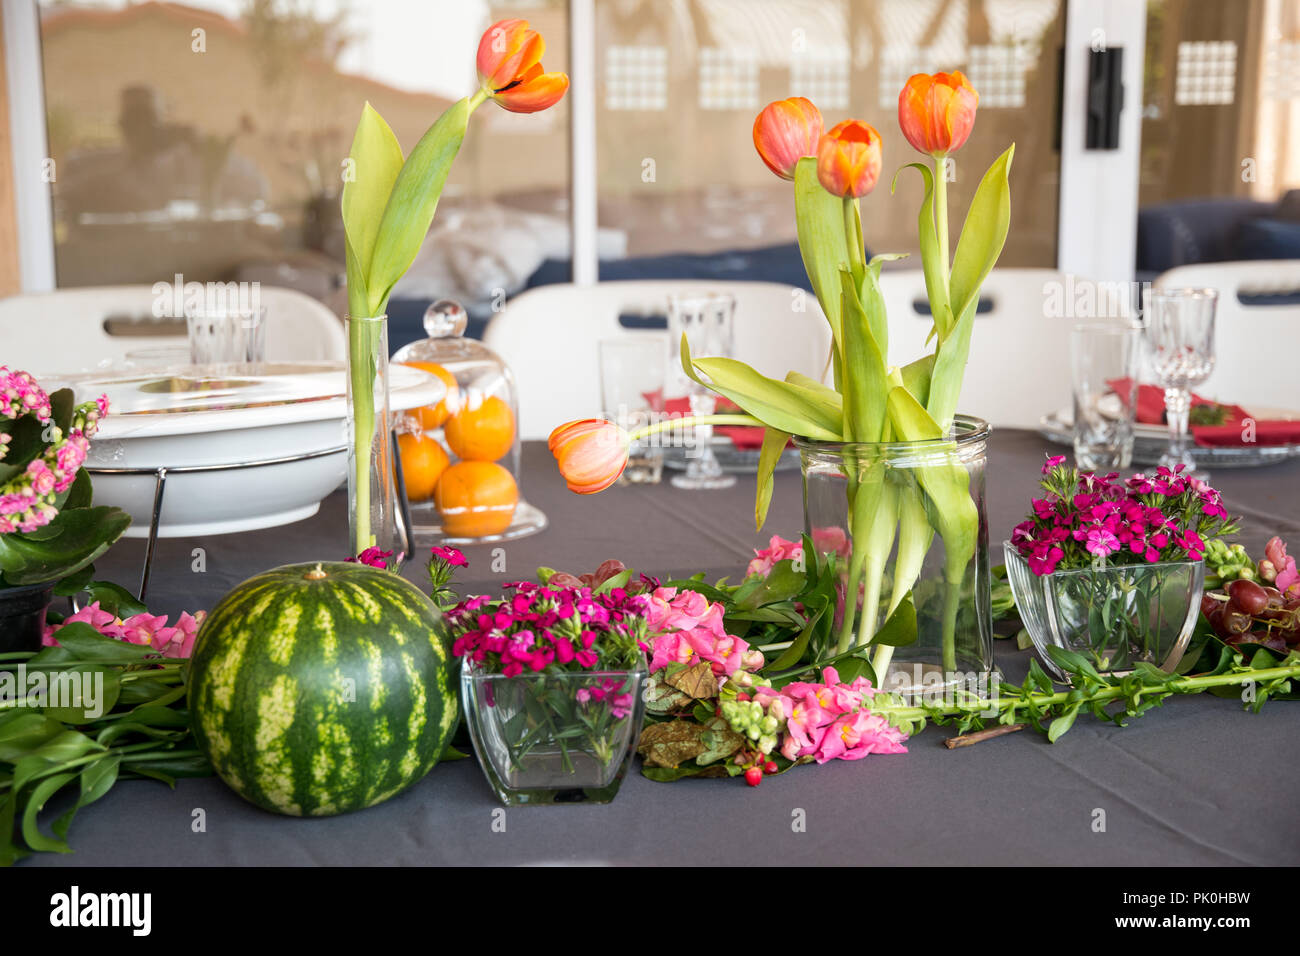 La table du déjeuner avec affichage floral de jolies fleurs aux couleurs orange et rose arrangements rougeâtre en premier plan avec une pastèque ronde & raisins Banque D'Images